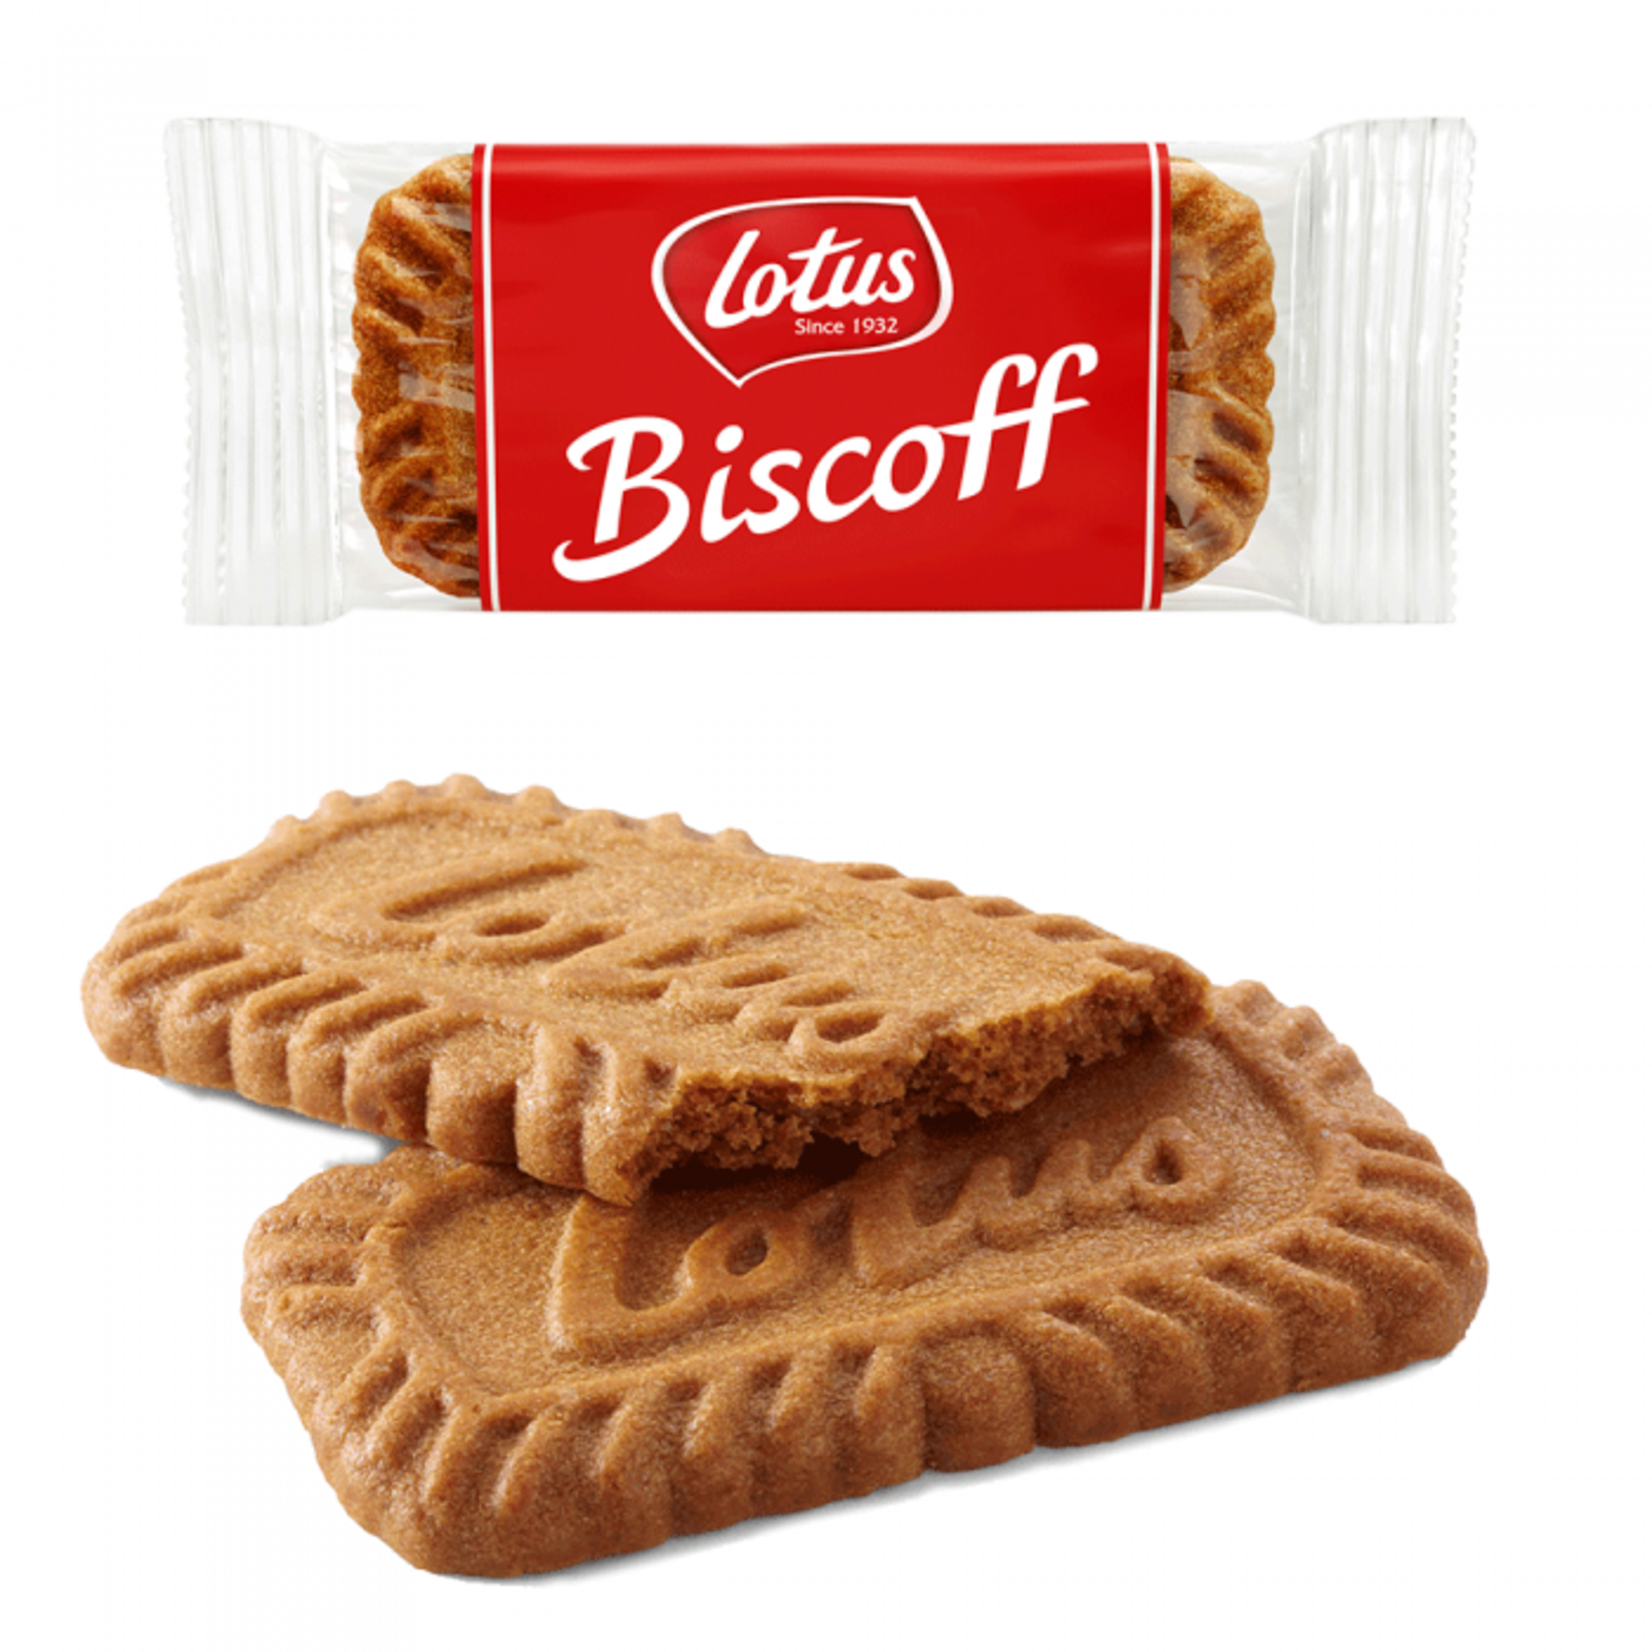 Biscoff Biscoff Crisp Cookies